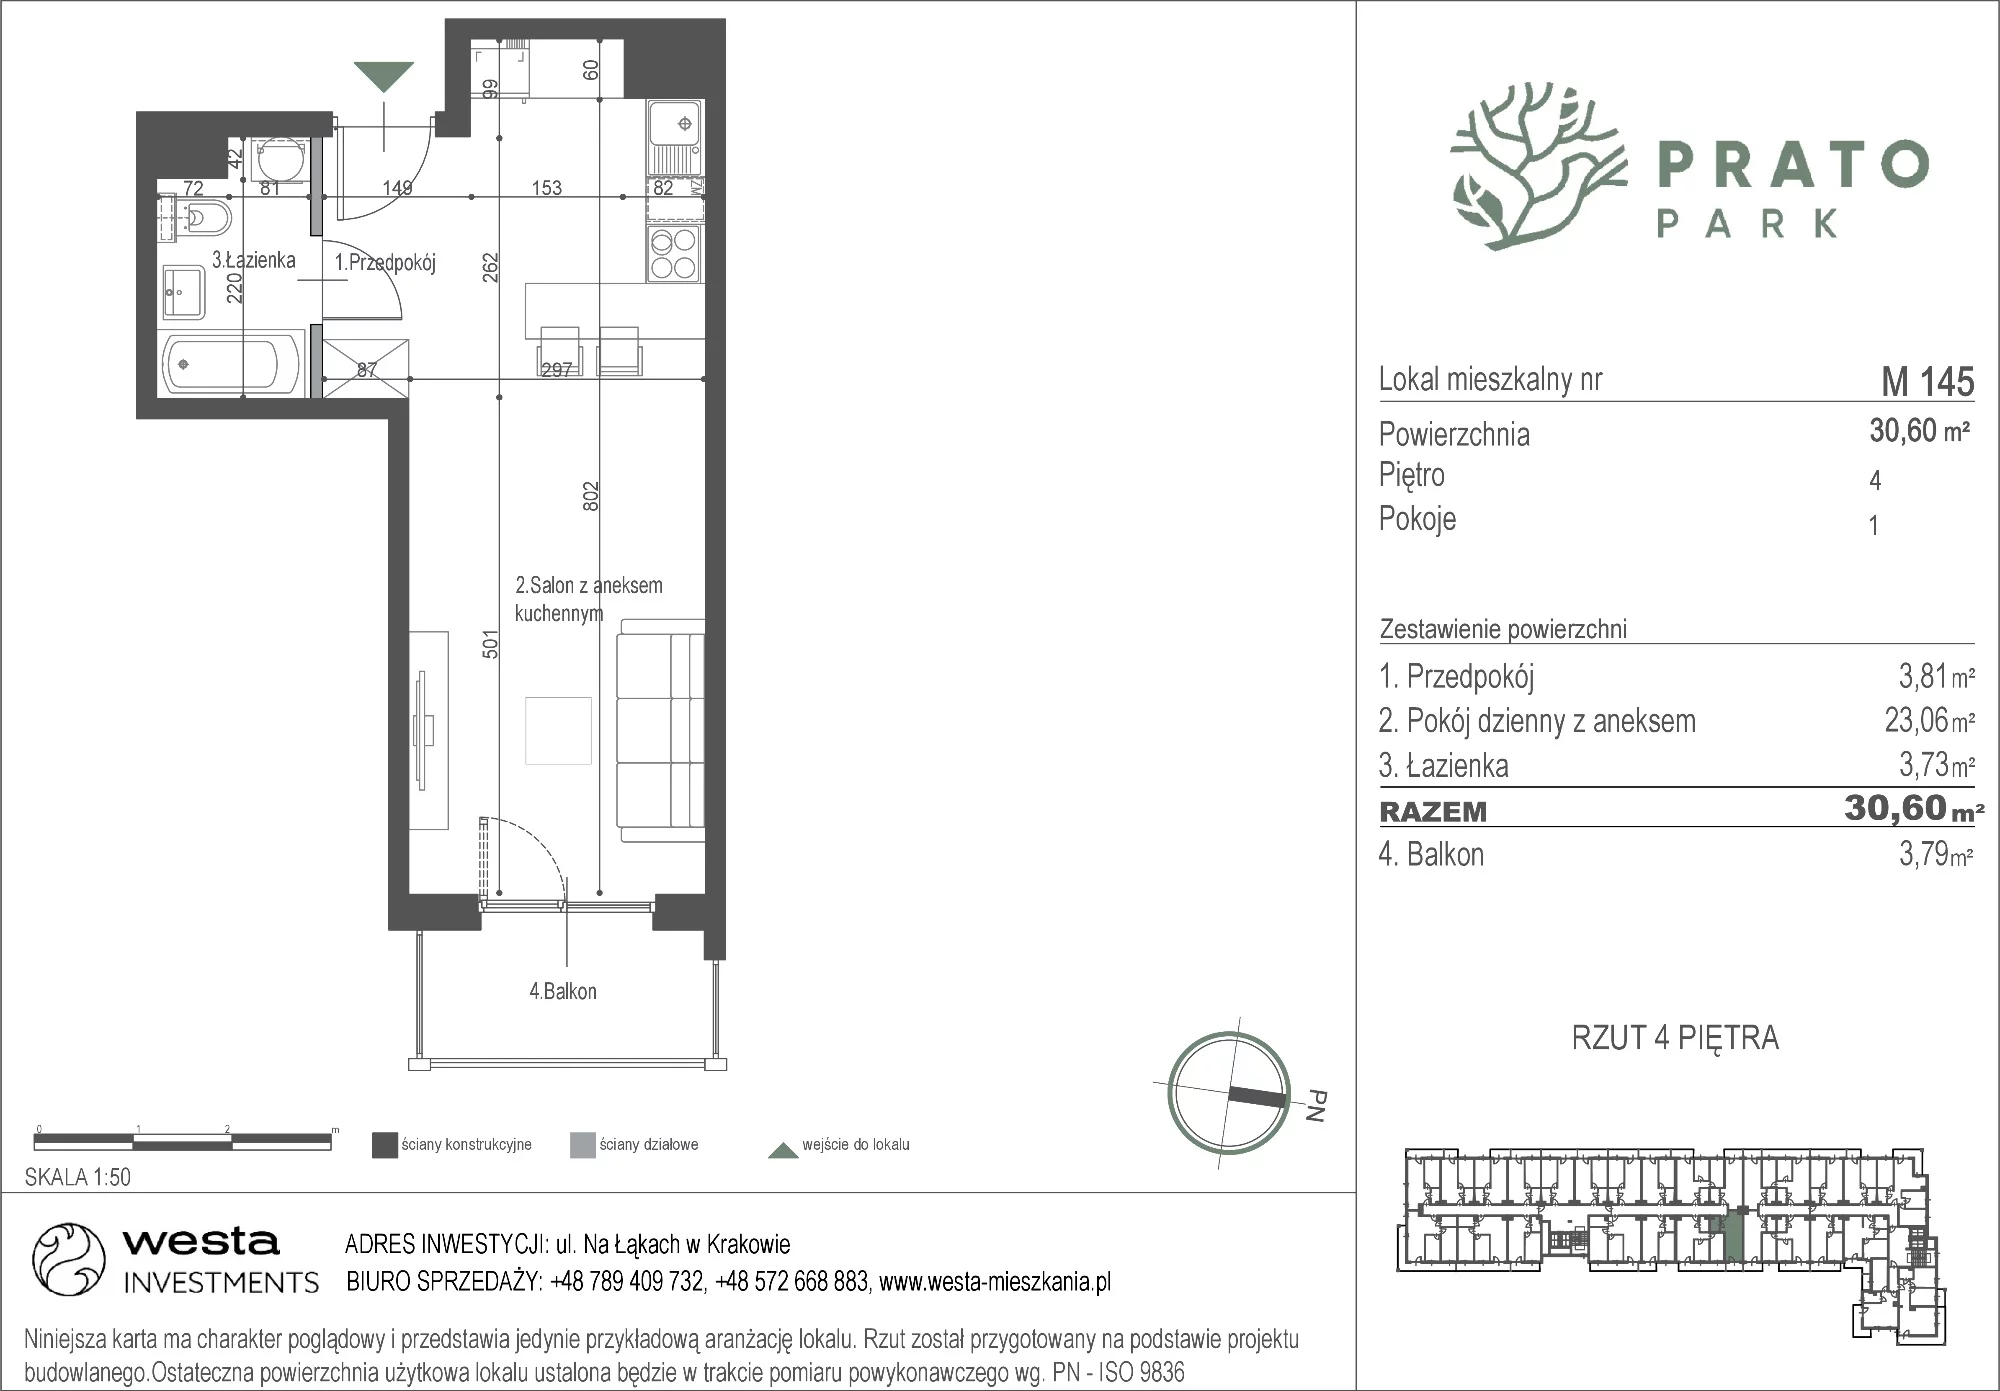 Mieszkanie 30,60 m², piętro 4, oferta nr M145, Prato Park, Kraków, Czyżyny, ul. Na Łąkach